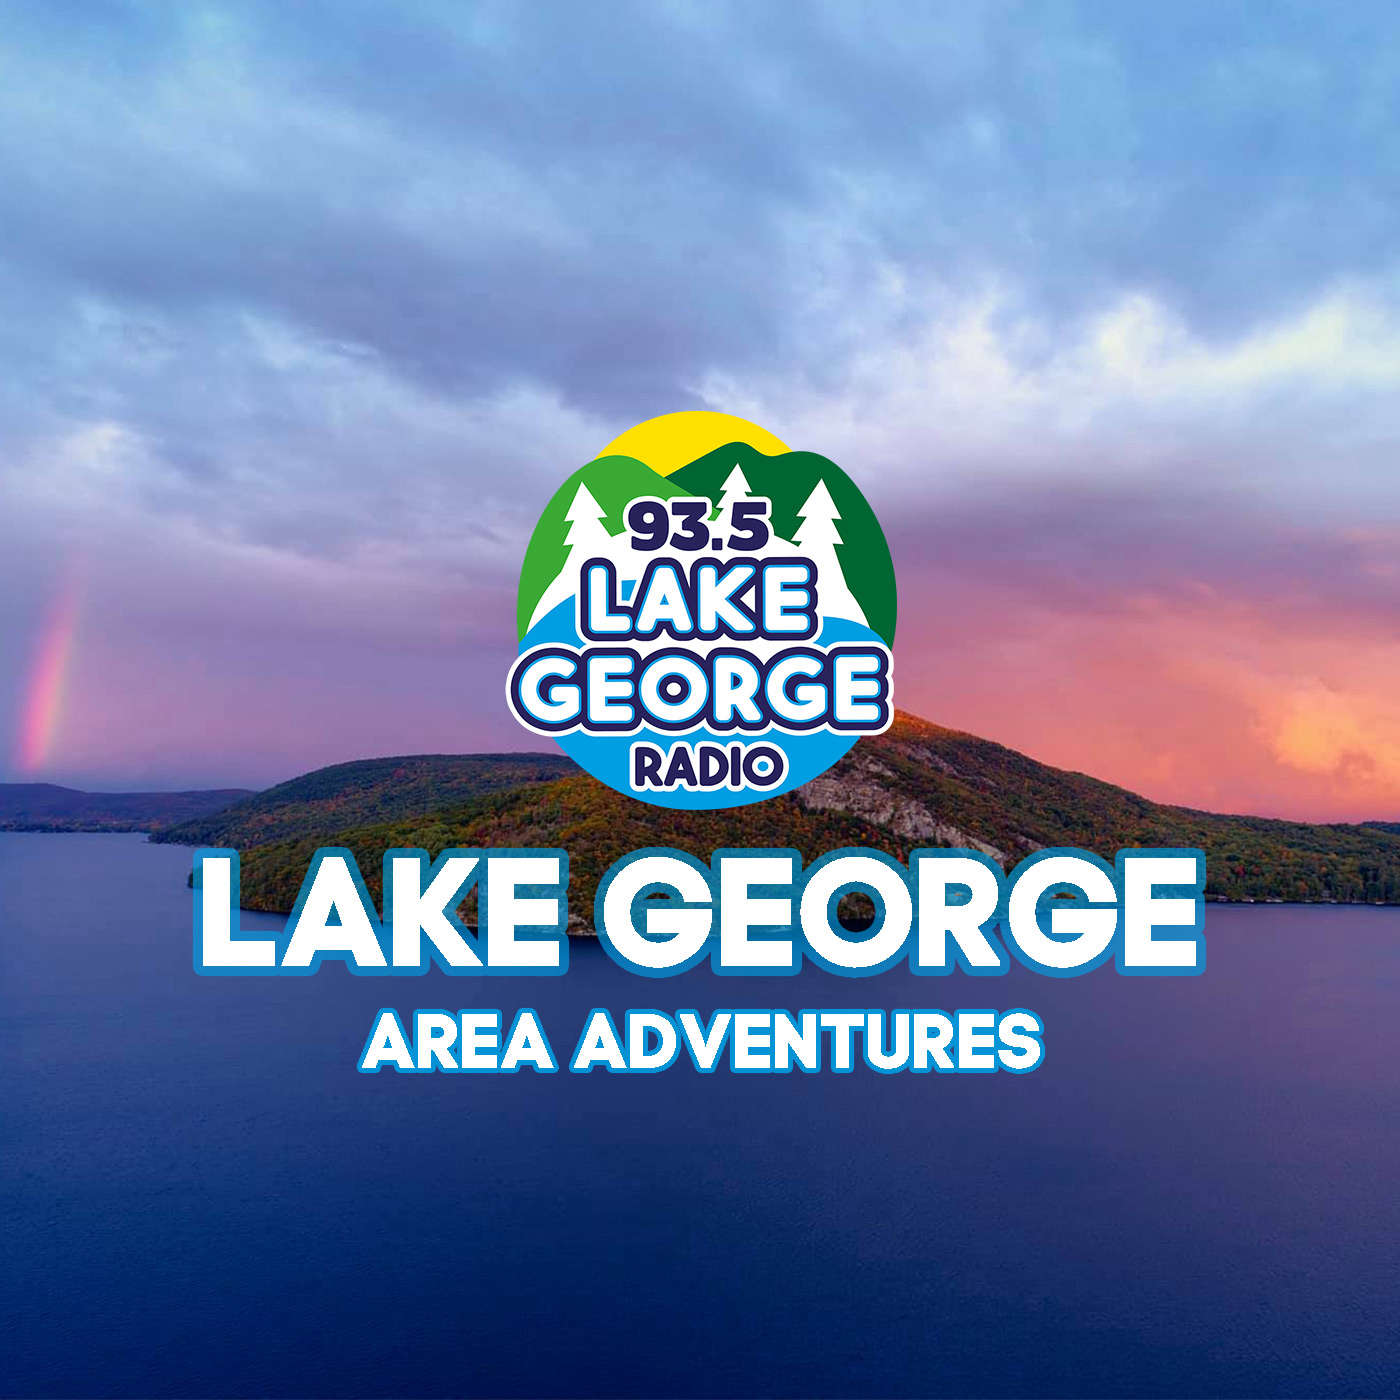 Lake George Area Adventures